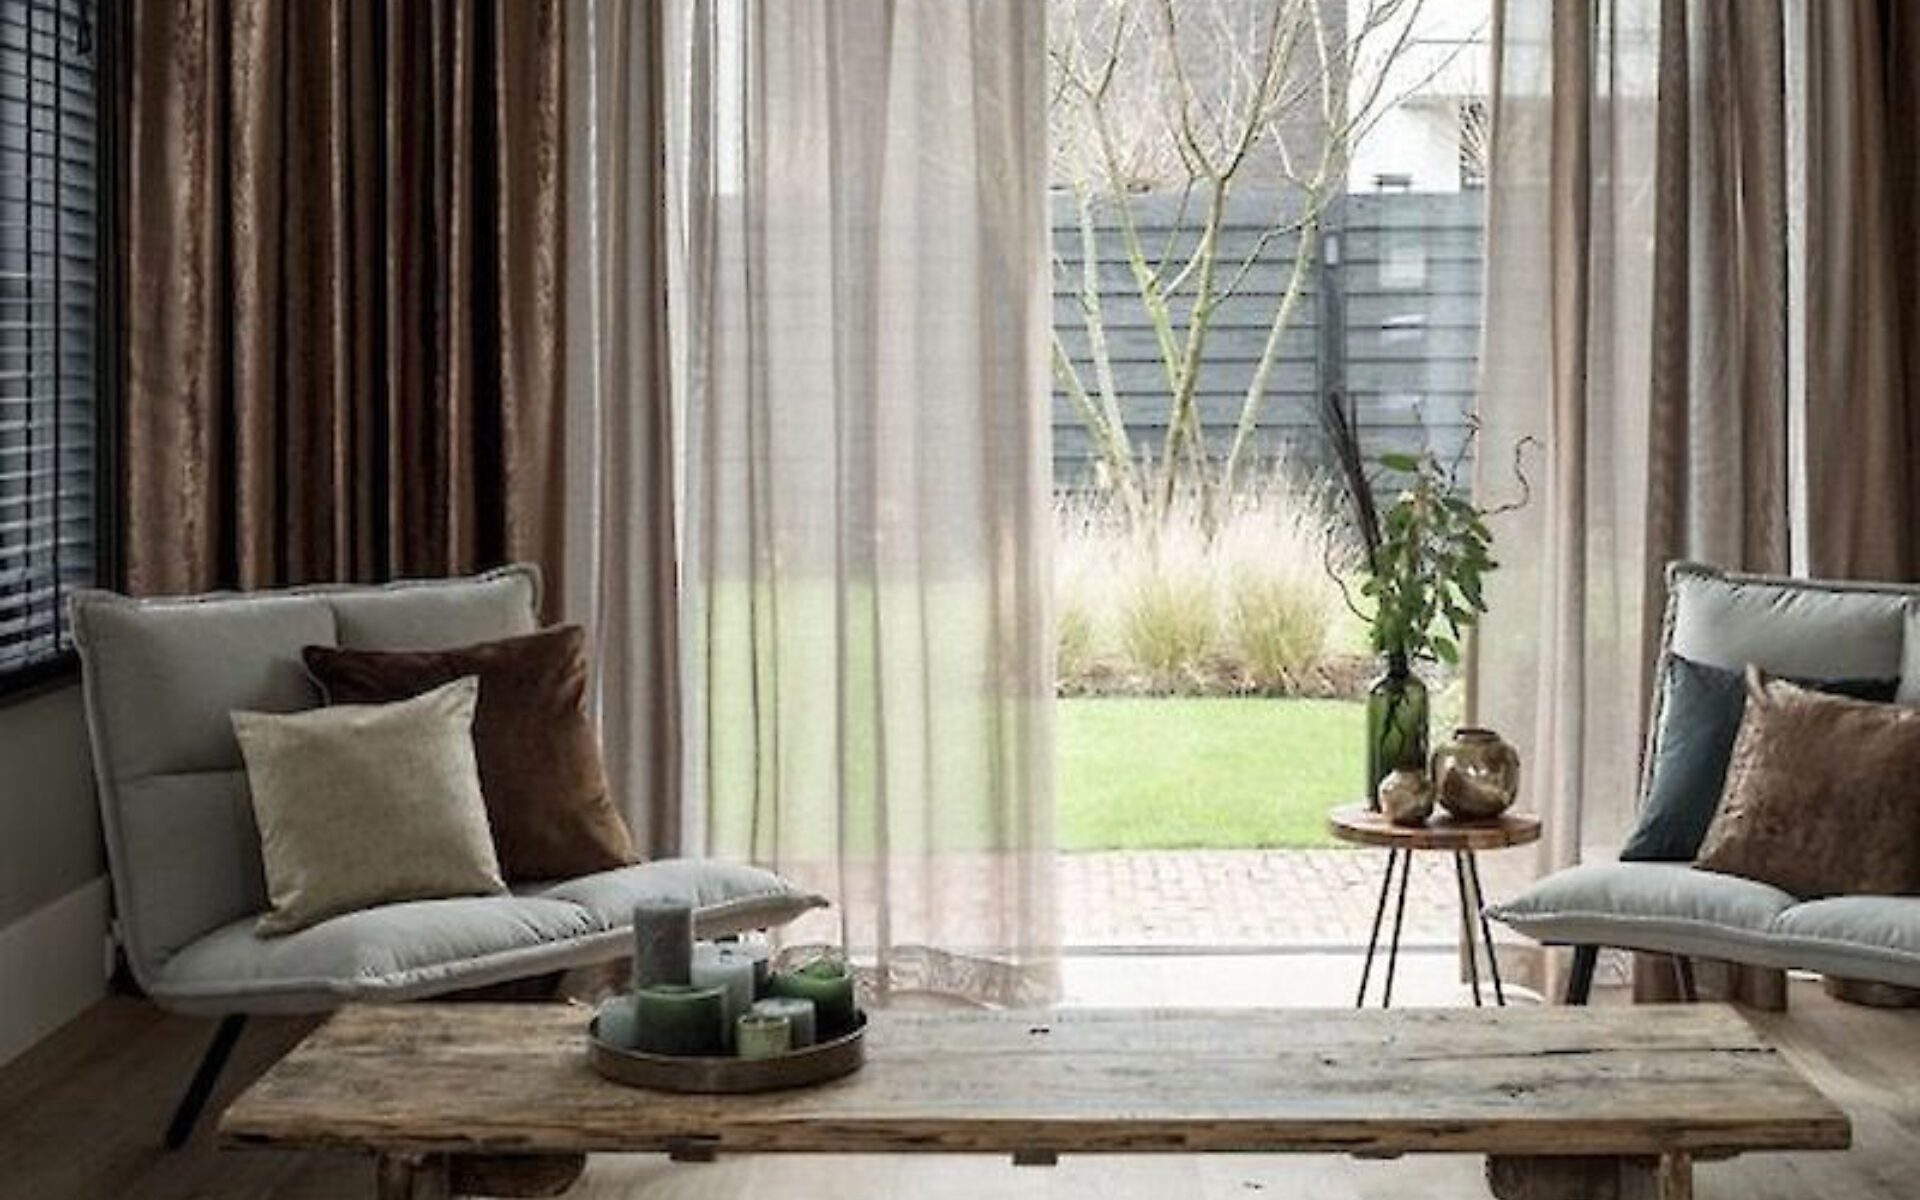 Raap bladeren op Licht pk Tot 60% minder zon in huis met deze gordijnen van Aanhuis.nl | Aanhuis